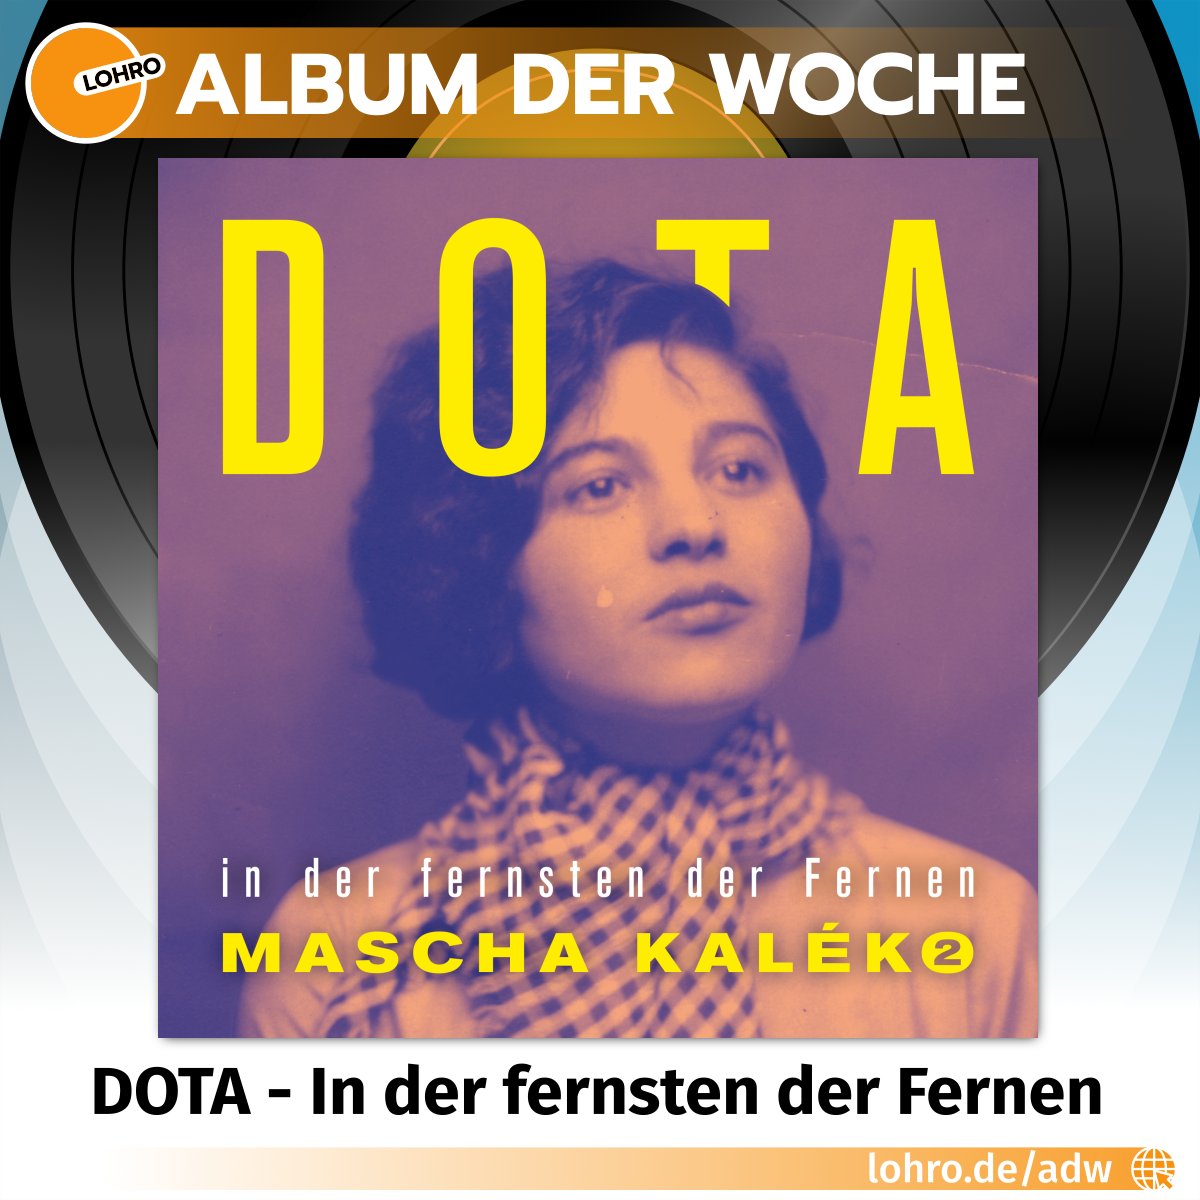 Nach dem Erfolg des ersten Albums widmet sich die Band DOTA erneut musikalisch den Texten der Dichterin Mascha Kaléko. Neben Sängerin @Dota_Kehr sind auch diesmal bekannte Stimmen der hiesigen Musikszene zu hören. Mehr über unser Album der Woche hört ihr ab Montag im Weckruf.